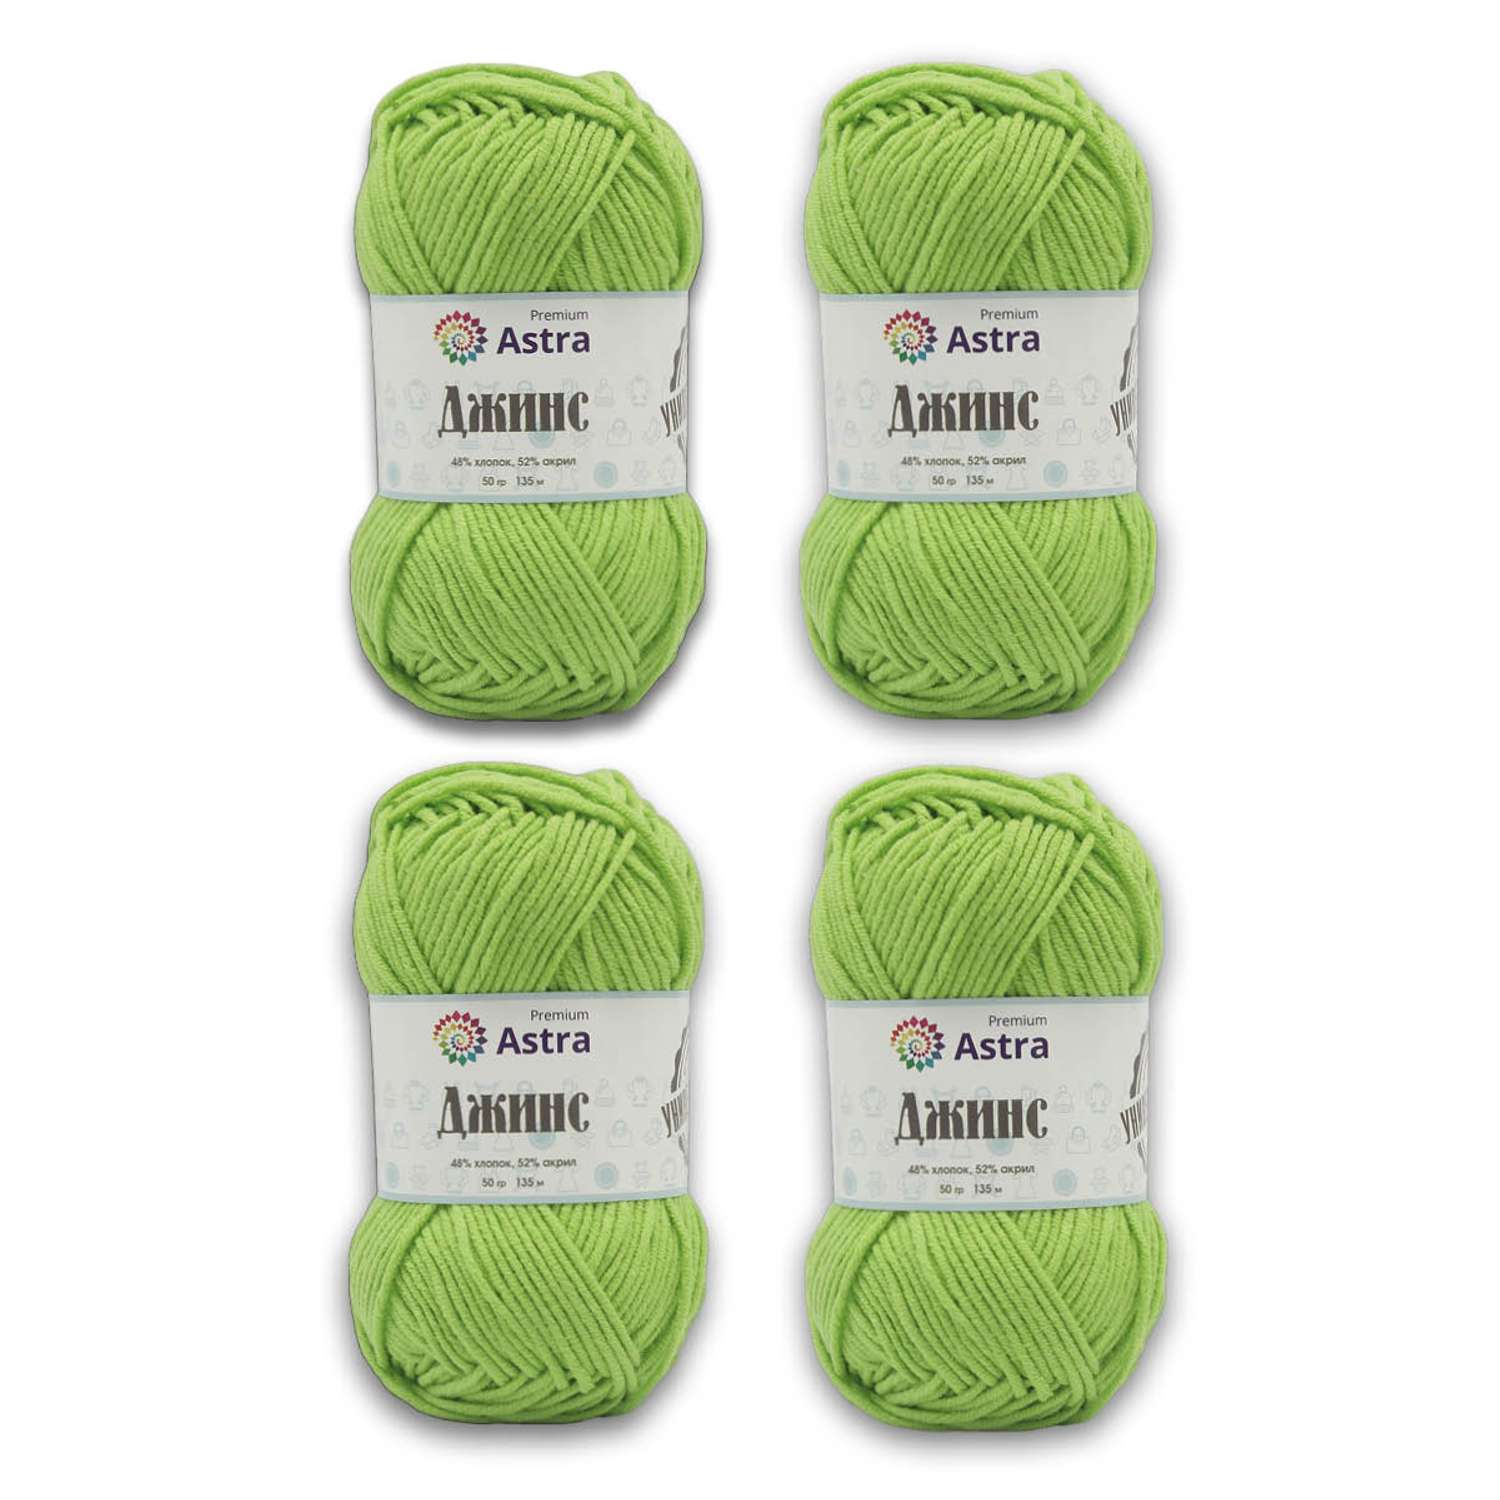 Пряжа для вязания Astra Premium джинс для повседневной одежды акрил хлопок 50 гр 135 м 450 зеленый 4 мотка - фото 9